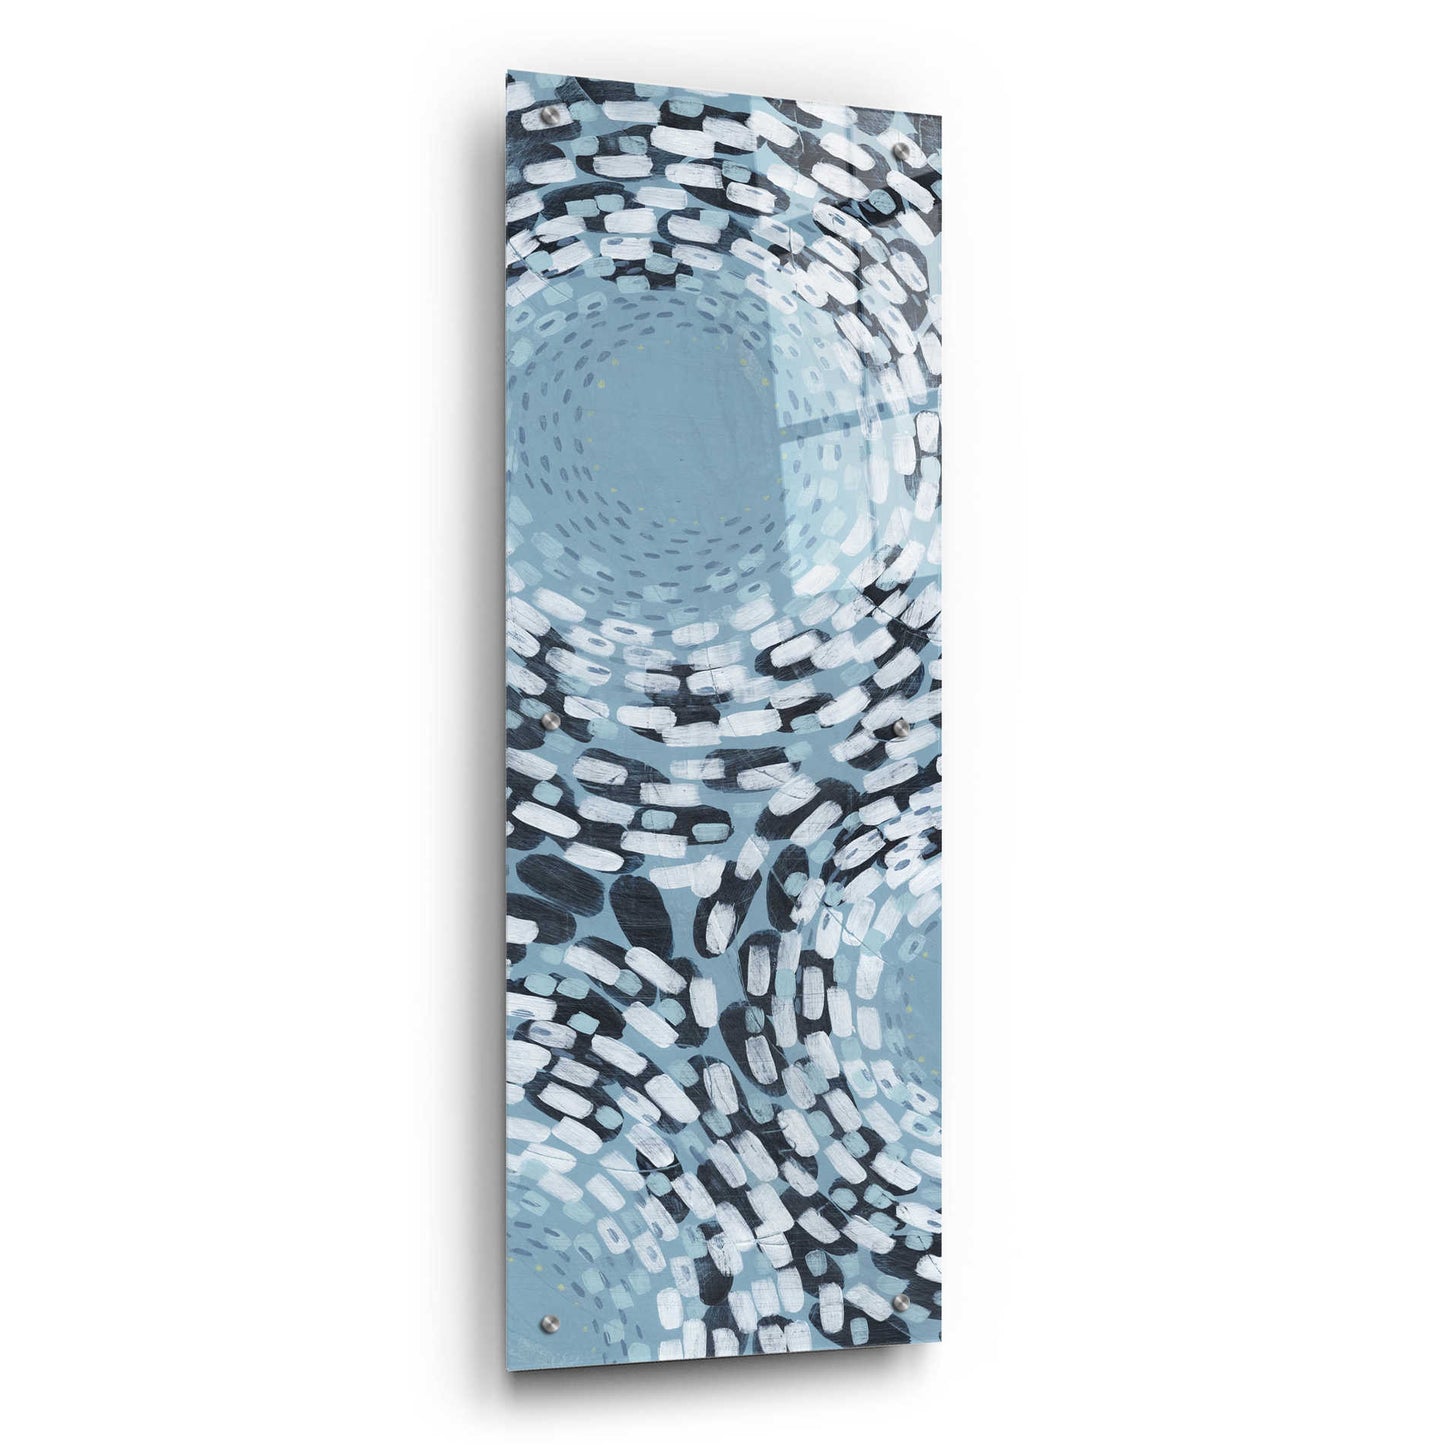 Epic Art 'Whirlpool II' by Grace Popp,Acrylic Glass Wall Art,12x36